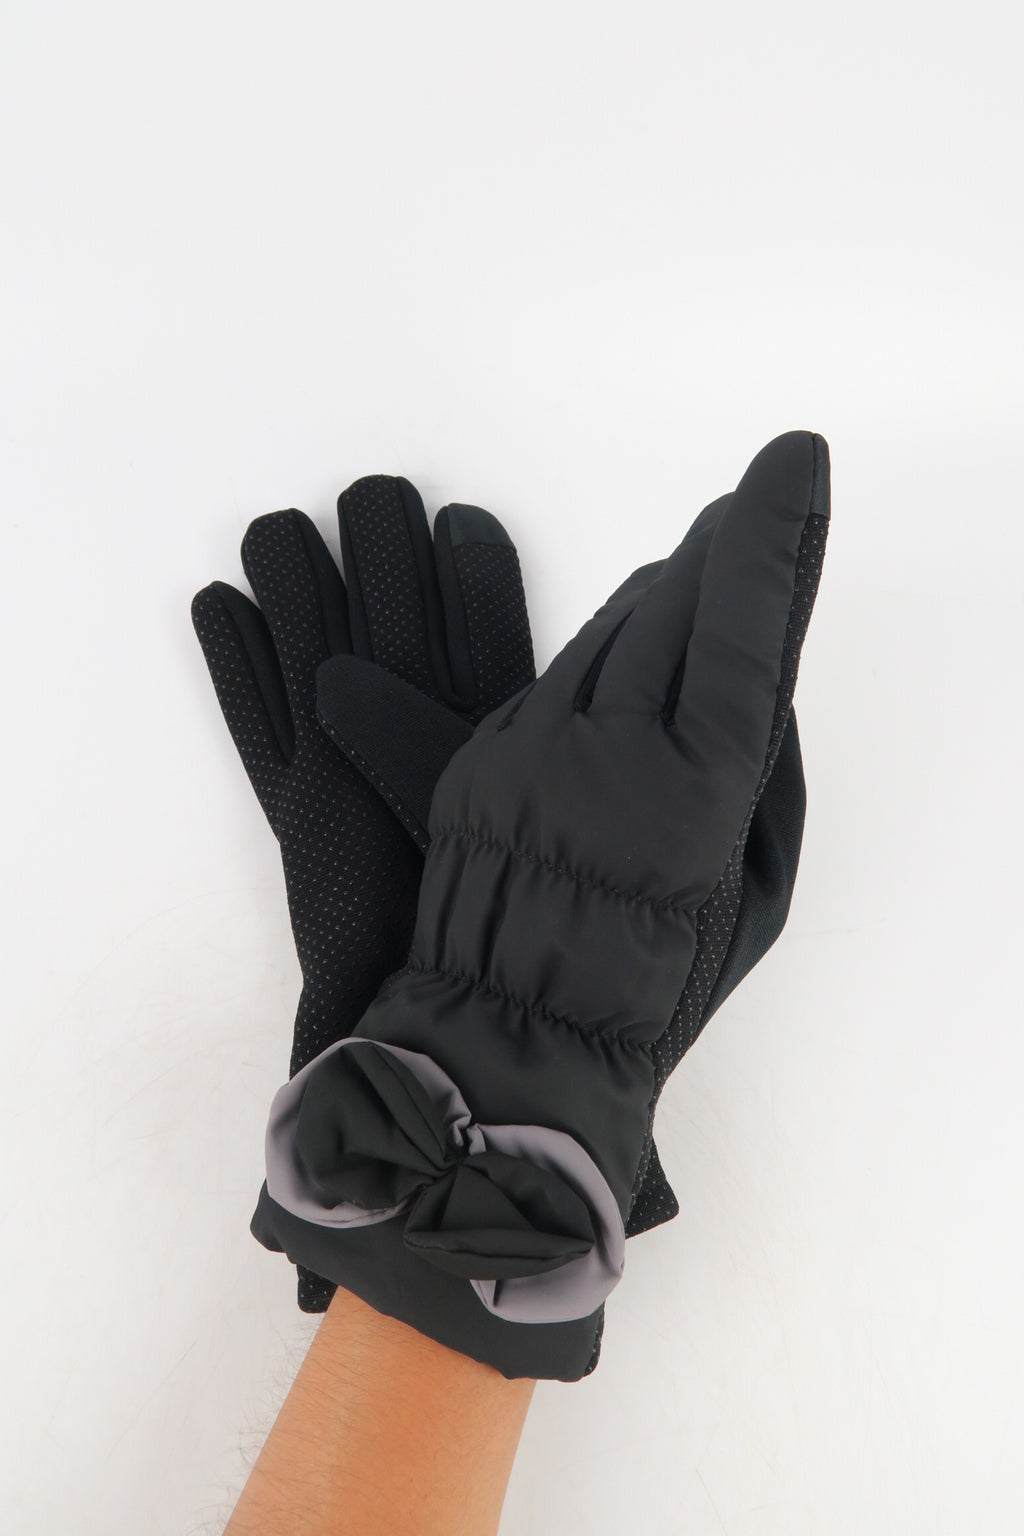 ถุงมือบุกันหนาวแต่งโบว์ กันหิมะ บุขนด้านใน  - Bowi Wool Lining Thermal Snow WindBreaker Gloves